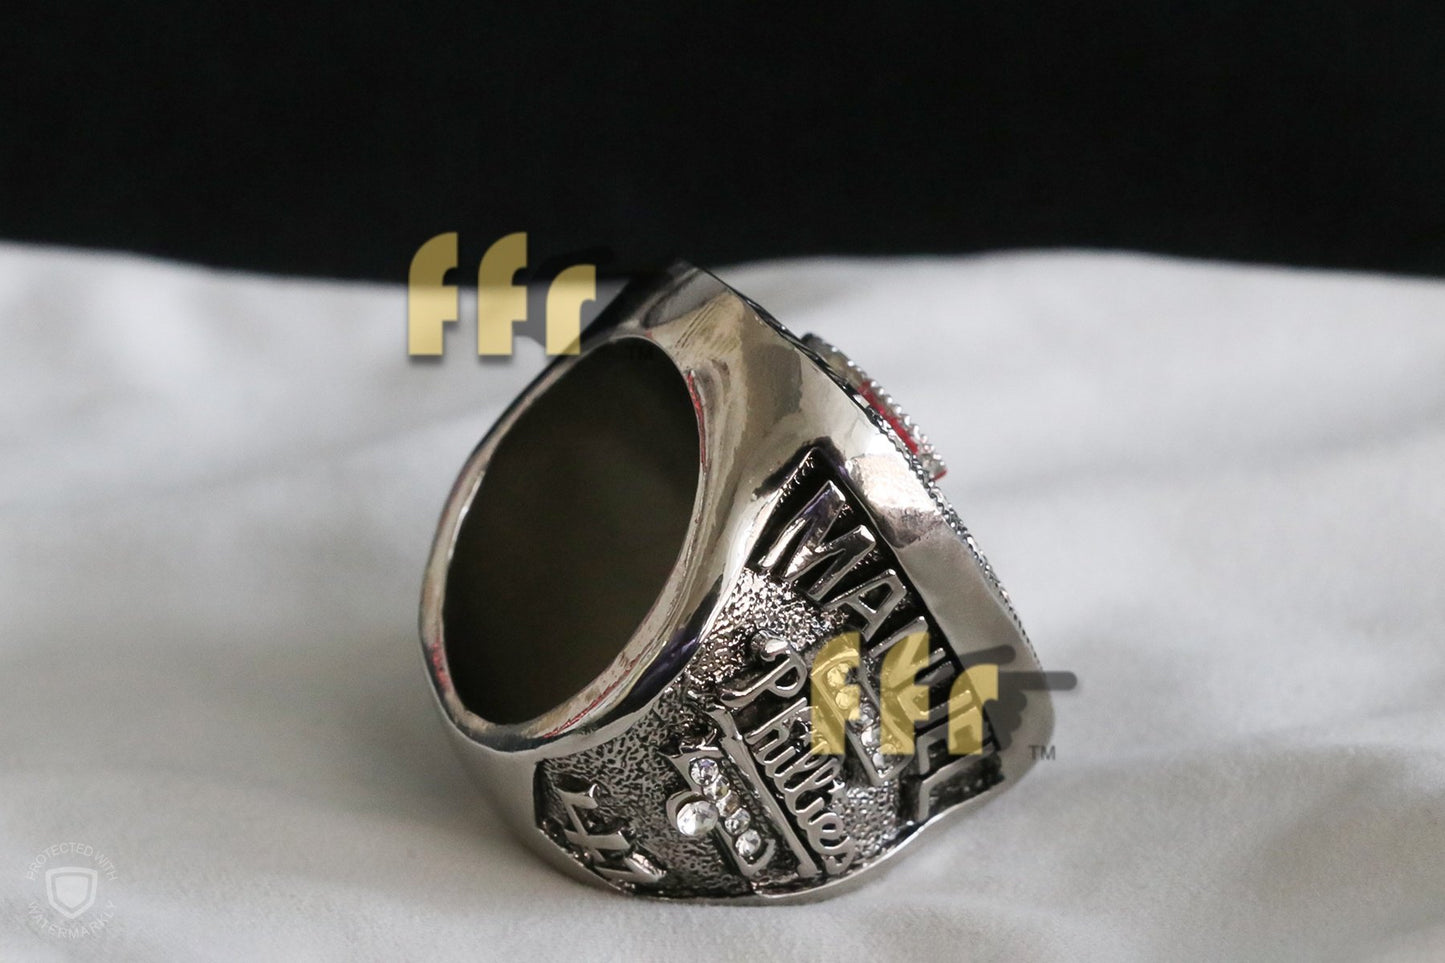 Philadelphia Phillies World Series Ring (2008) - Manuel - Rings For Champs, NFL rings, MLB rings, NBA rings, NHL rings, NCAA rings, Super bowl ring, Superbowl ring, Super bowl rings, Superbowl rings, Dallas Cowboys